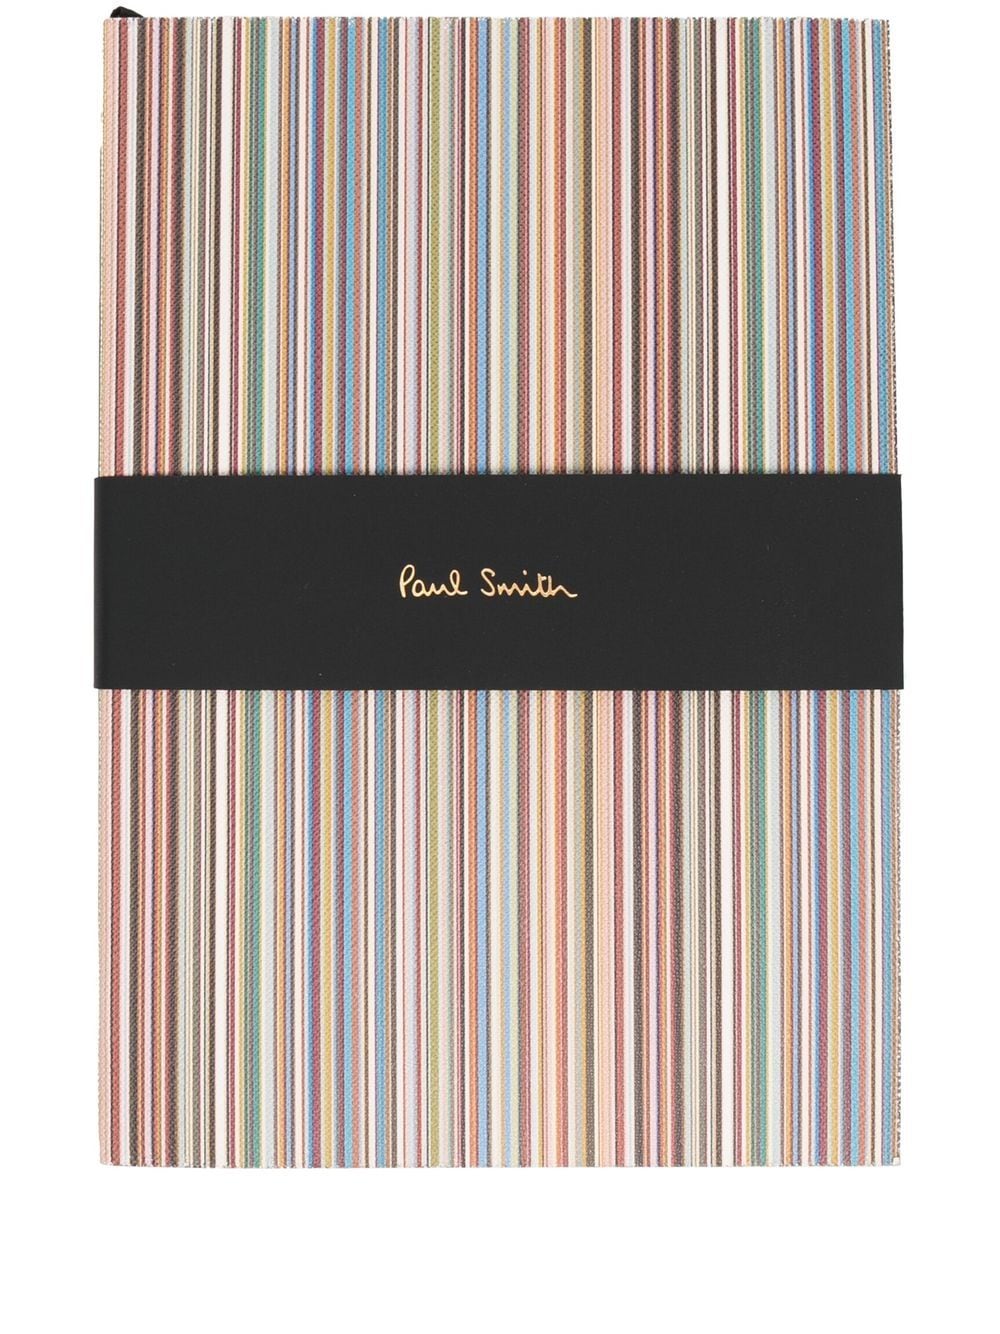 Paul Smith Signature Stripe notebook